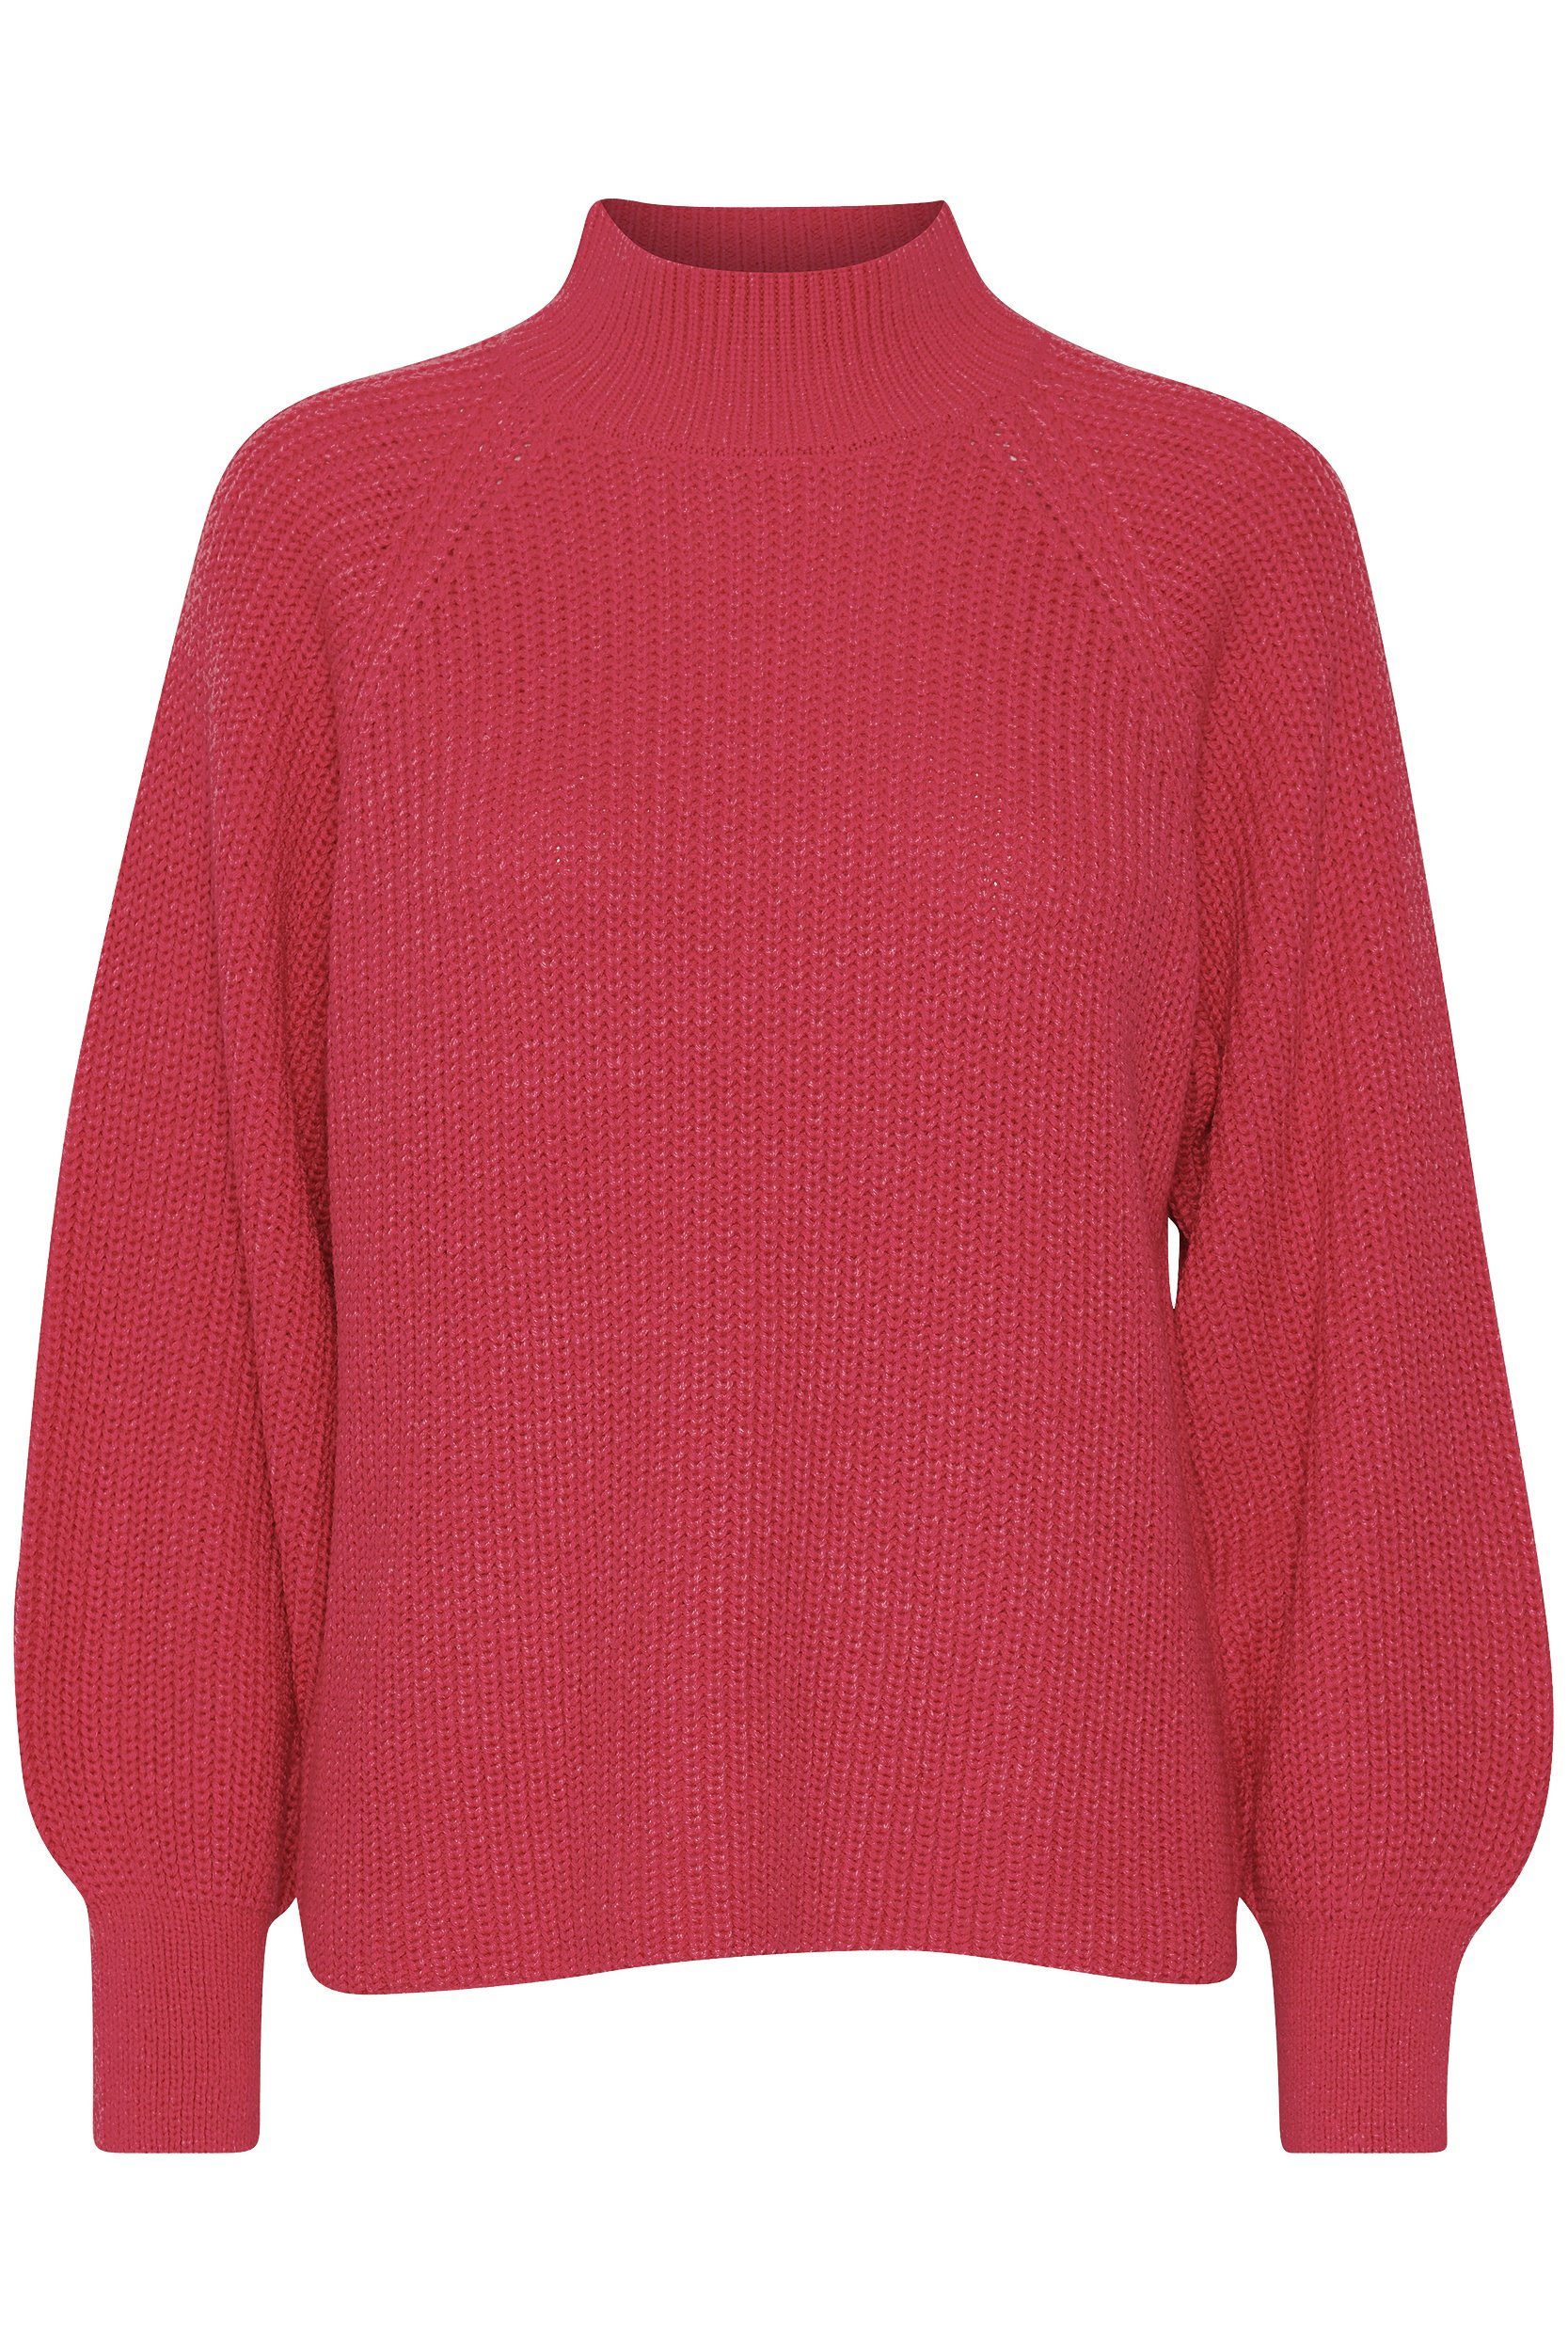 Pullover Sweater b.young Kragen Strickpullover Rot Ballonärmeln mit Grobstrick mit 6692 in